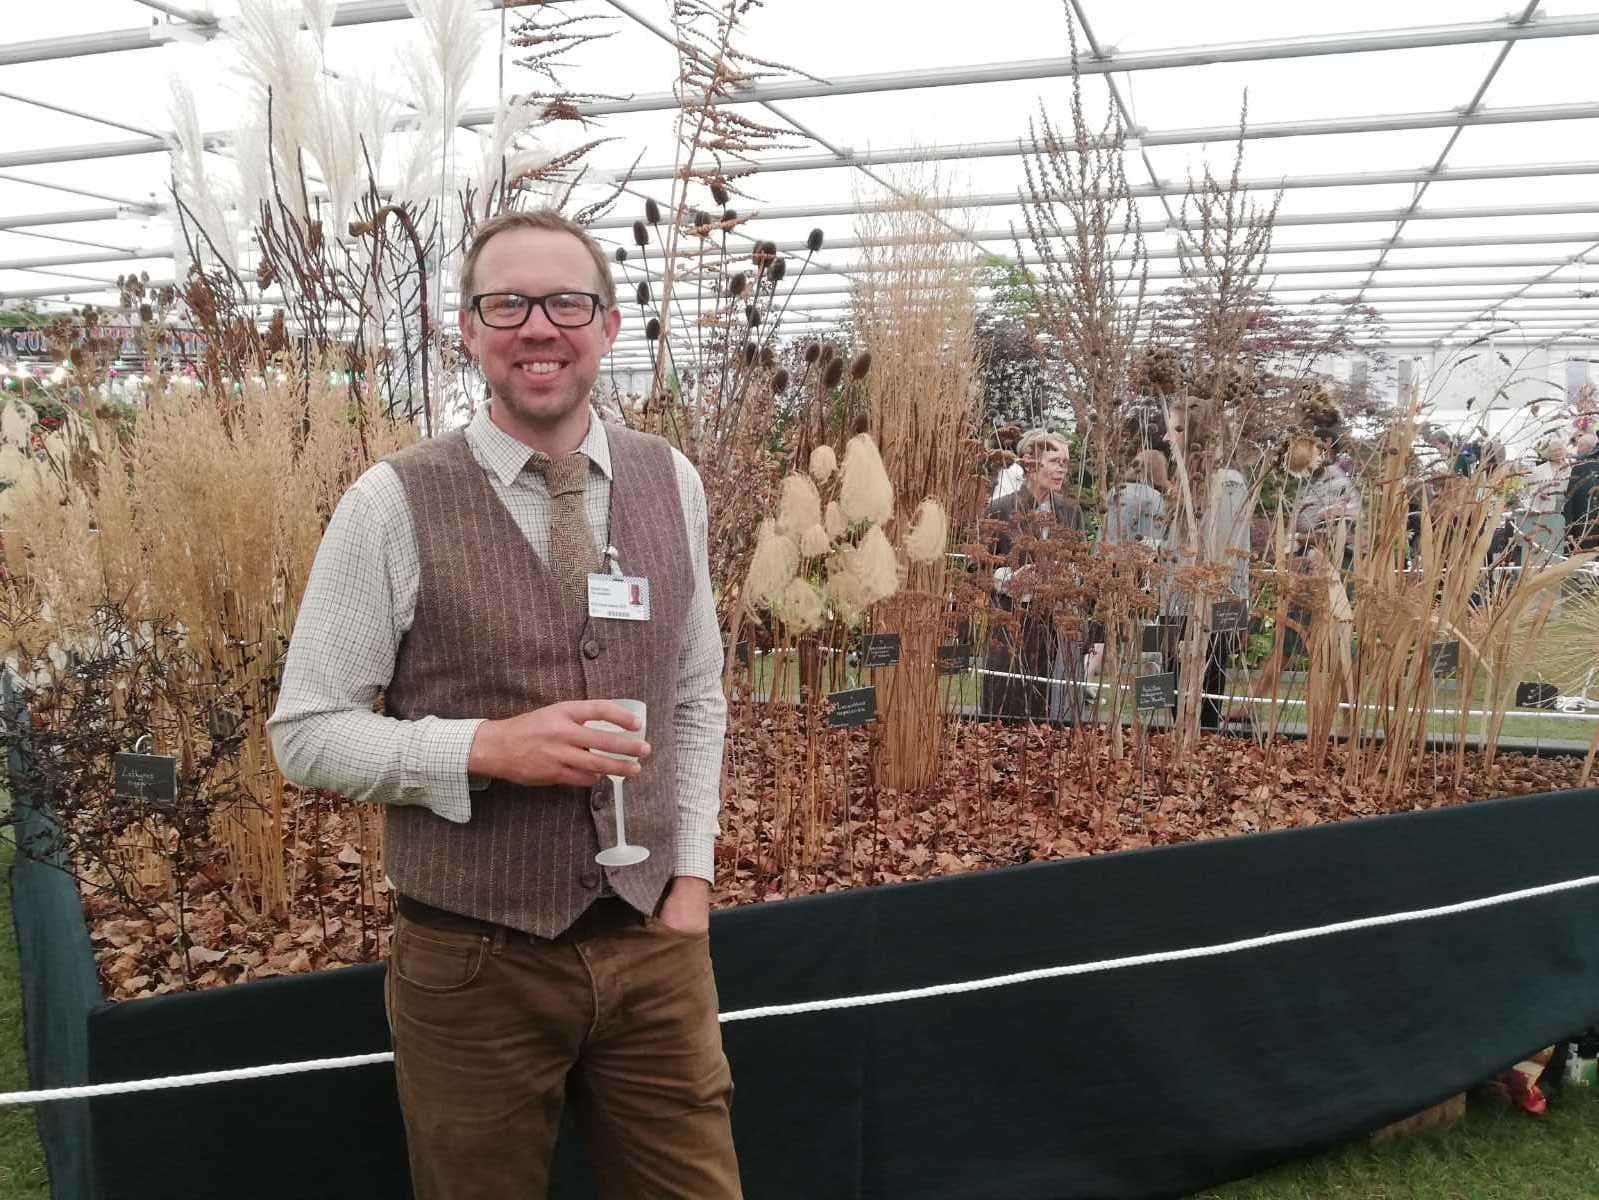 Steve Edney, head gardener at the Salutation, won gold at the Chelsea Flower Show last year